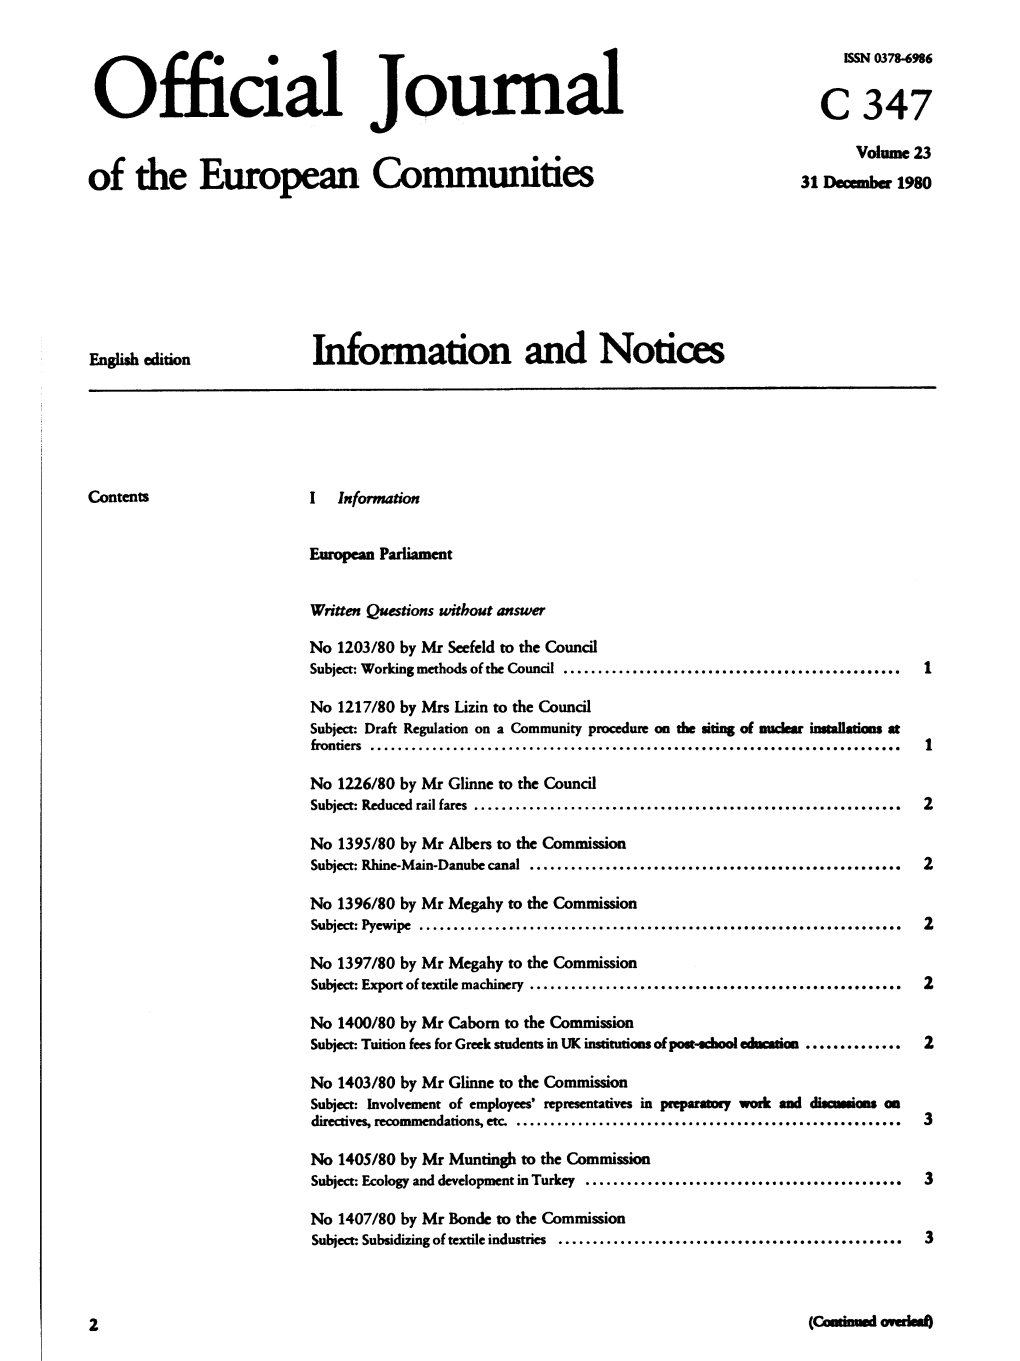 Official Journal C 347 Volume 23 of Die European Communities 31 December 1980